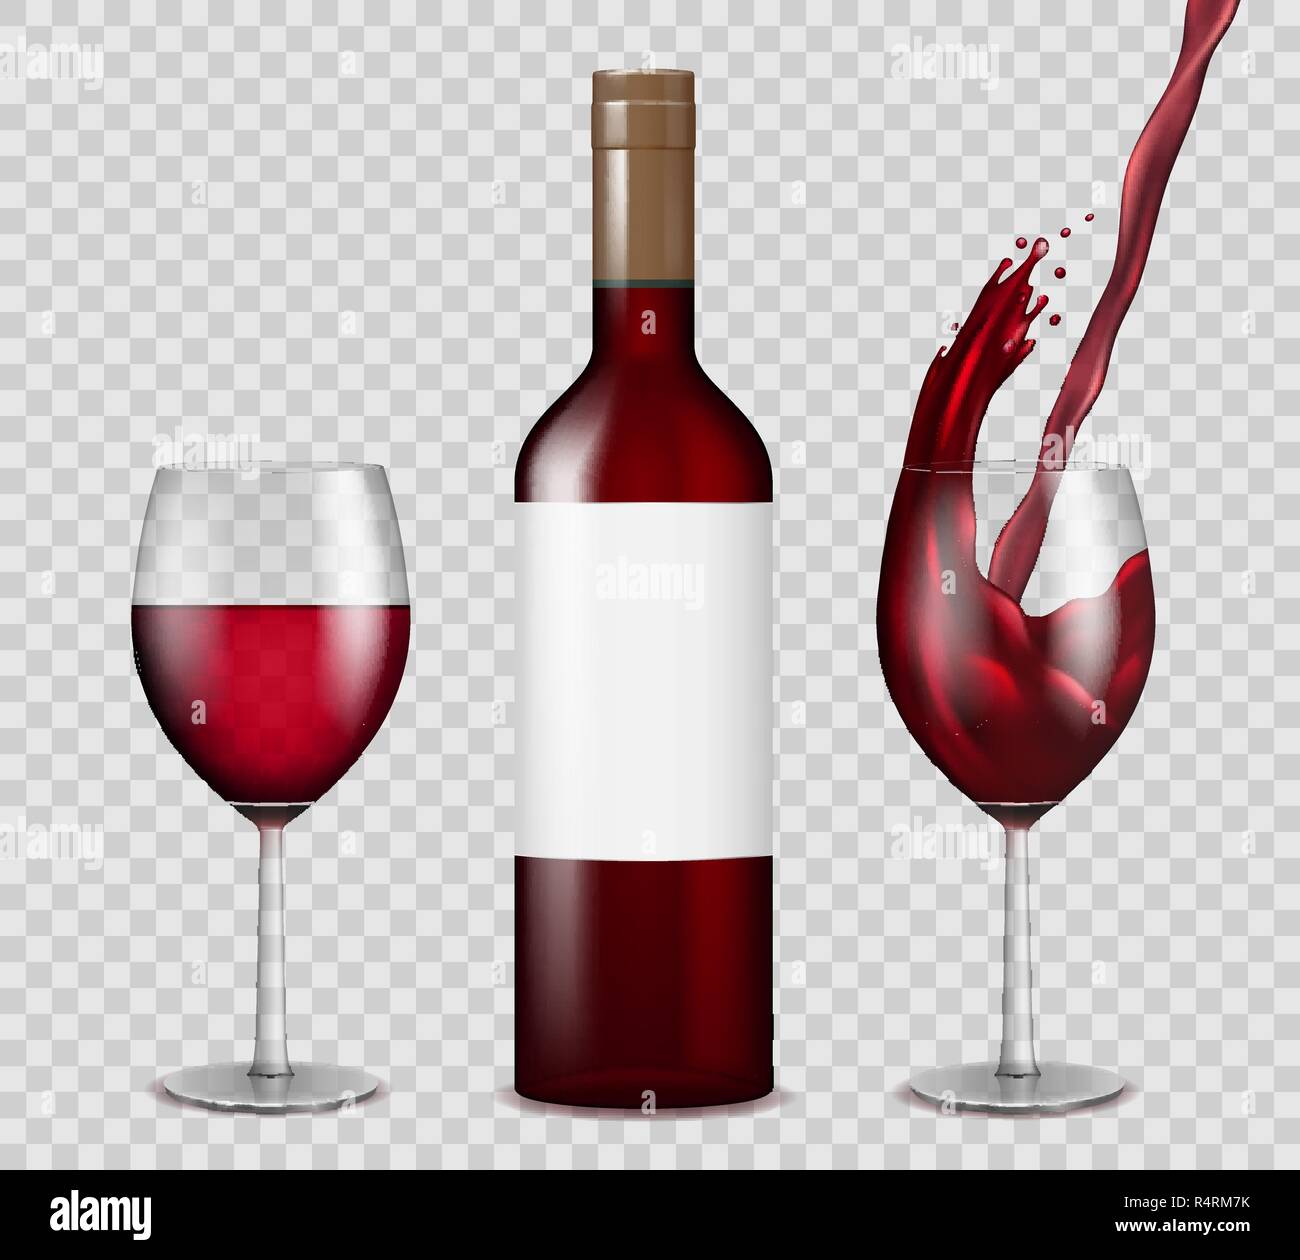 Bouteille de vin transparent et wineglasses immersive. Vin rouge splash en bouteille et verres isolés. Vector illustration. Illustration de Vecteur